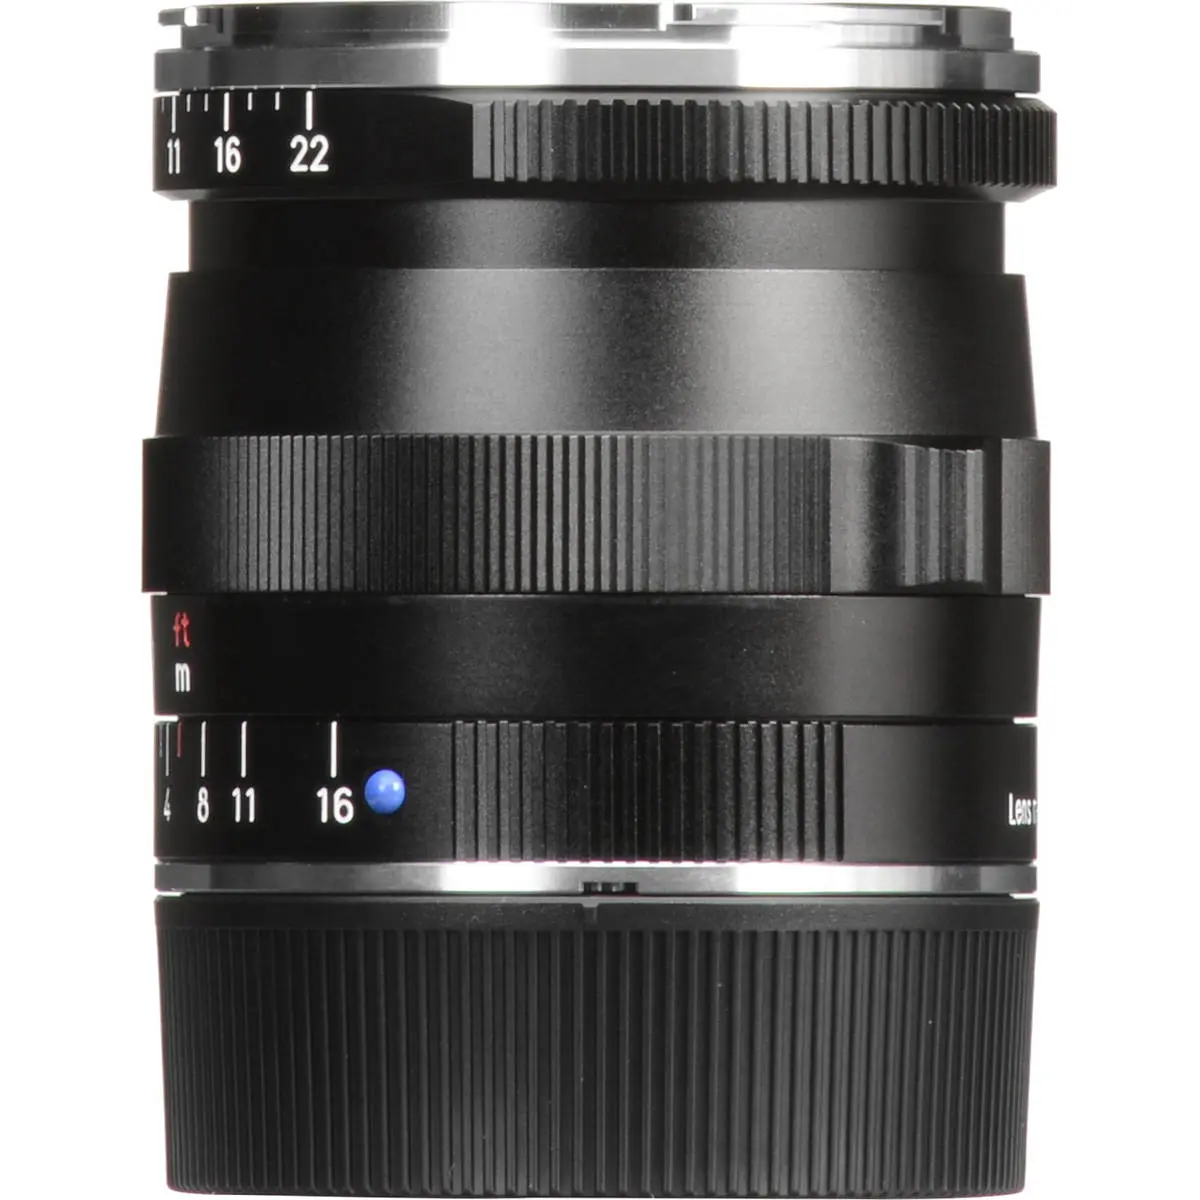 8. Carl Zeiss 21mm F/2.8 BIOGON T* ZM (Leica M) Black Lens